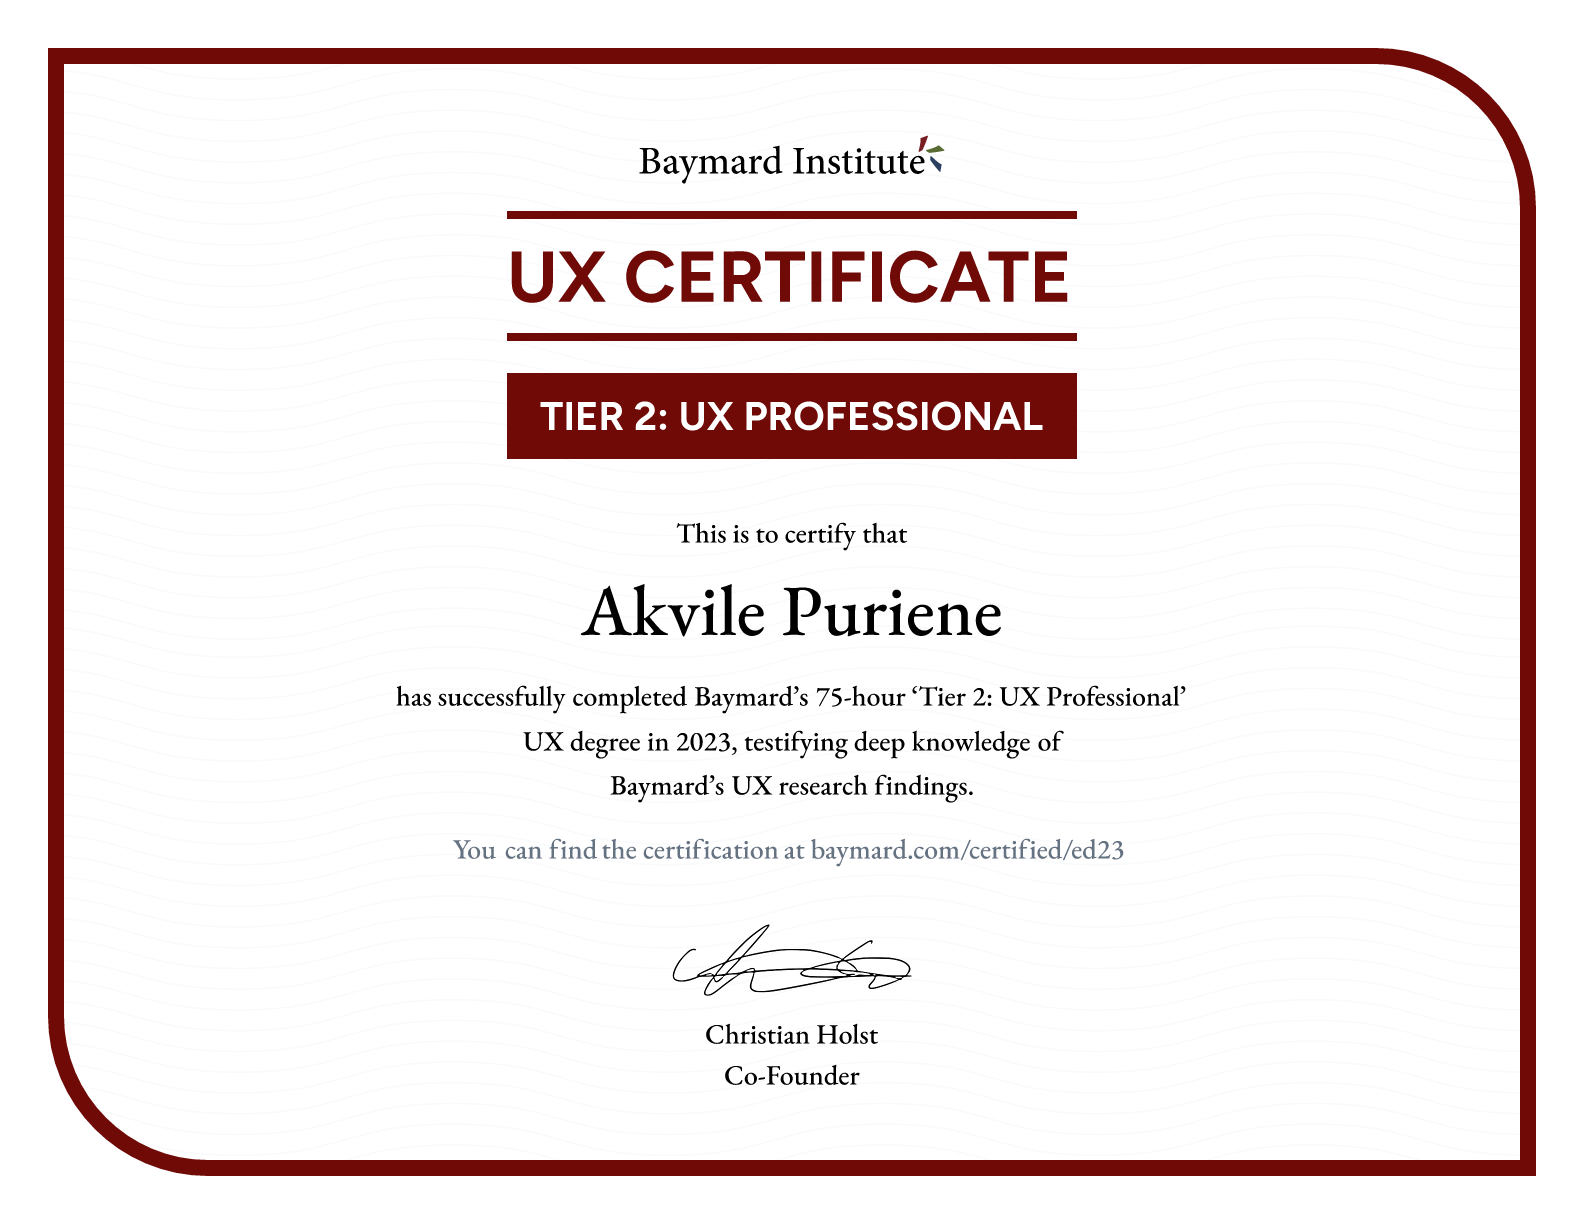 Akvile Puriene’s certificate